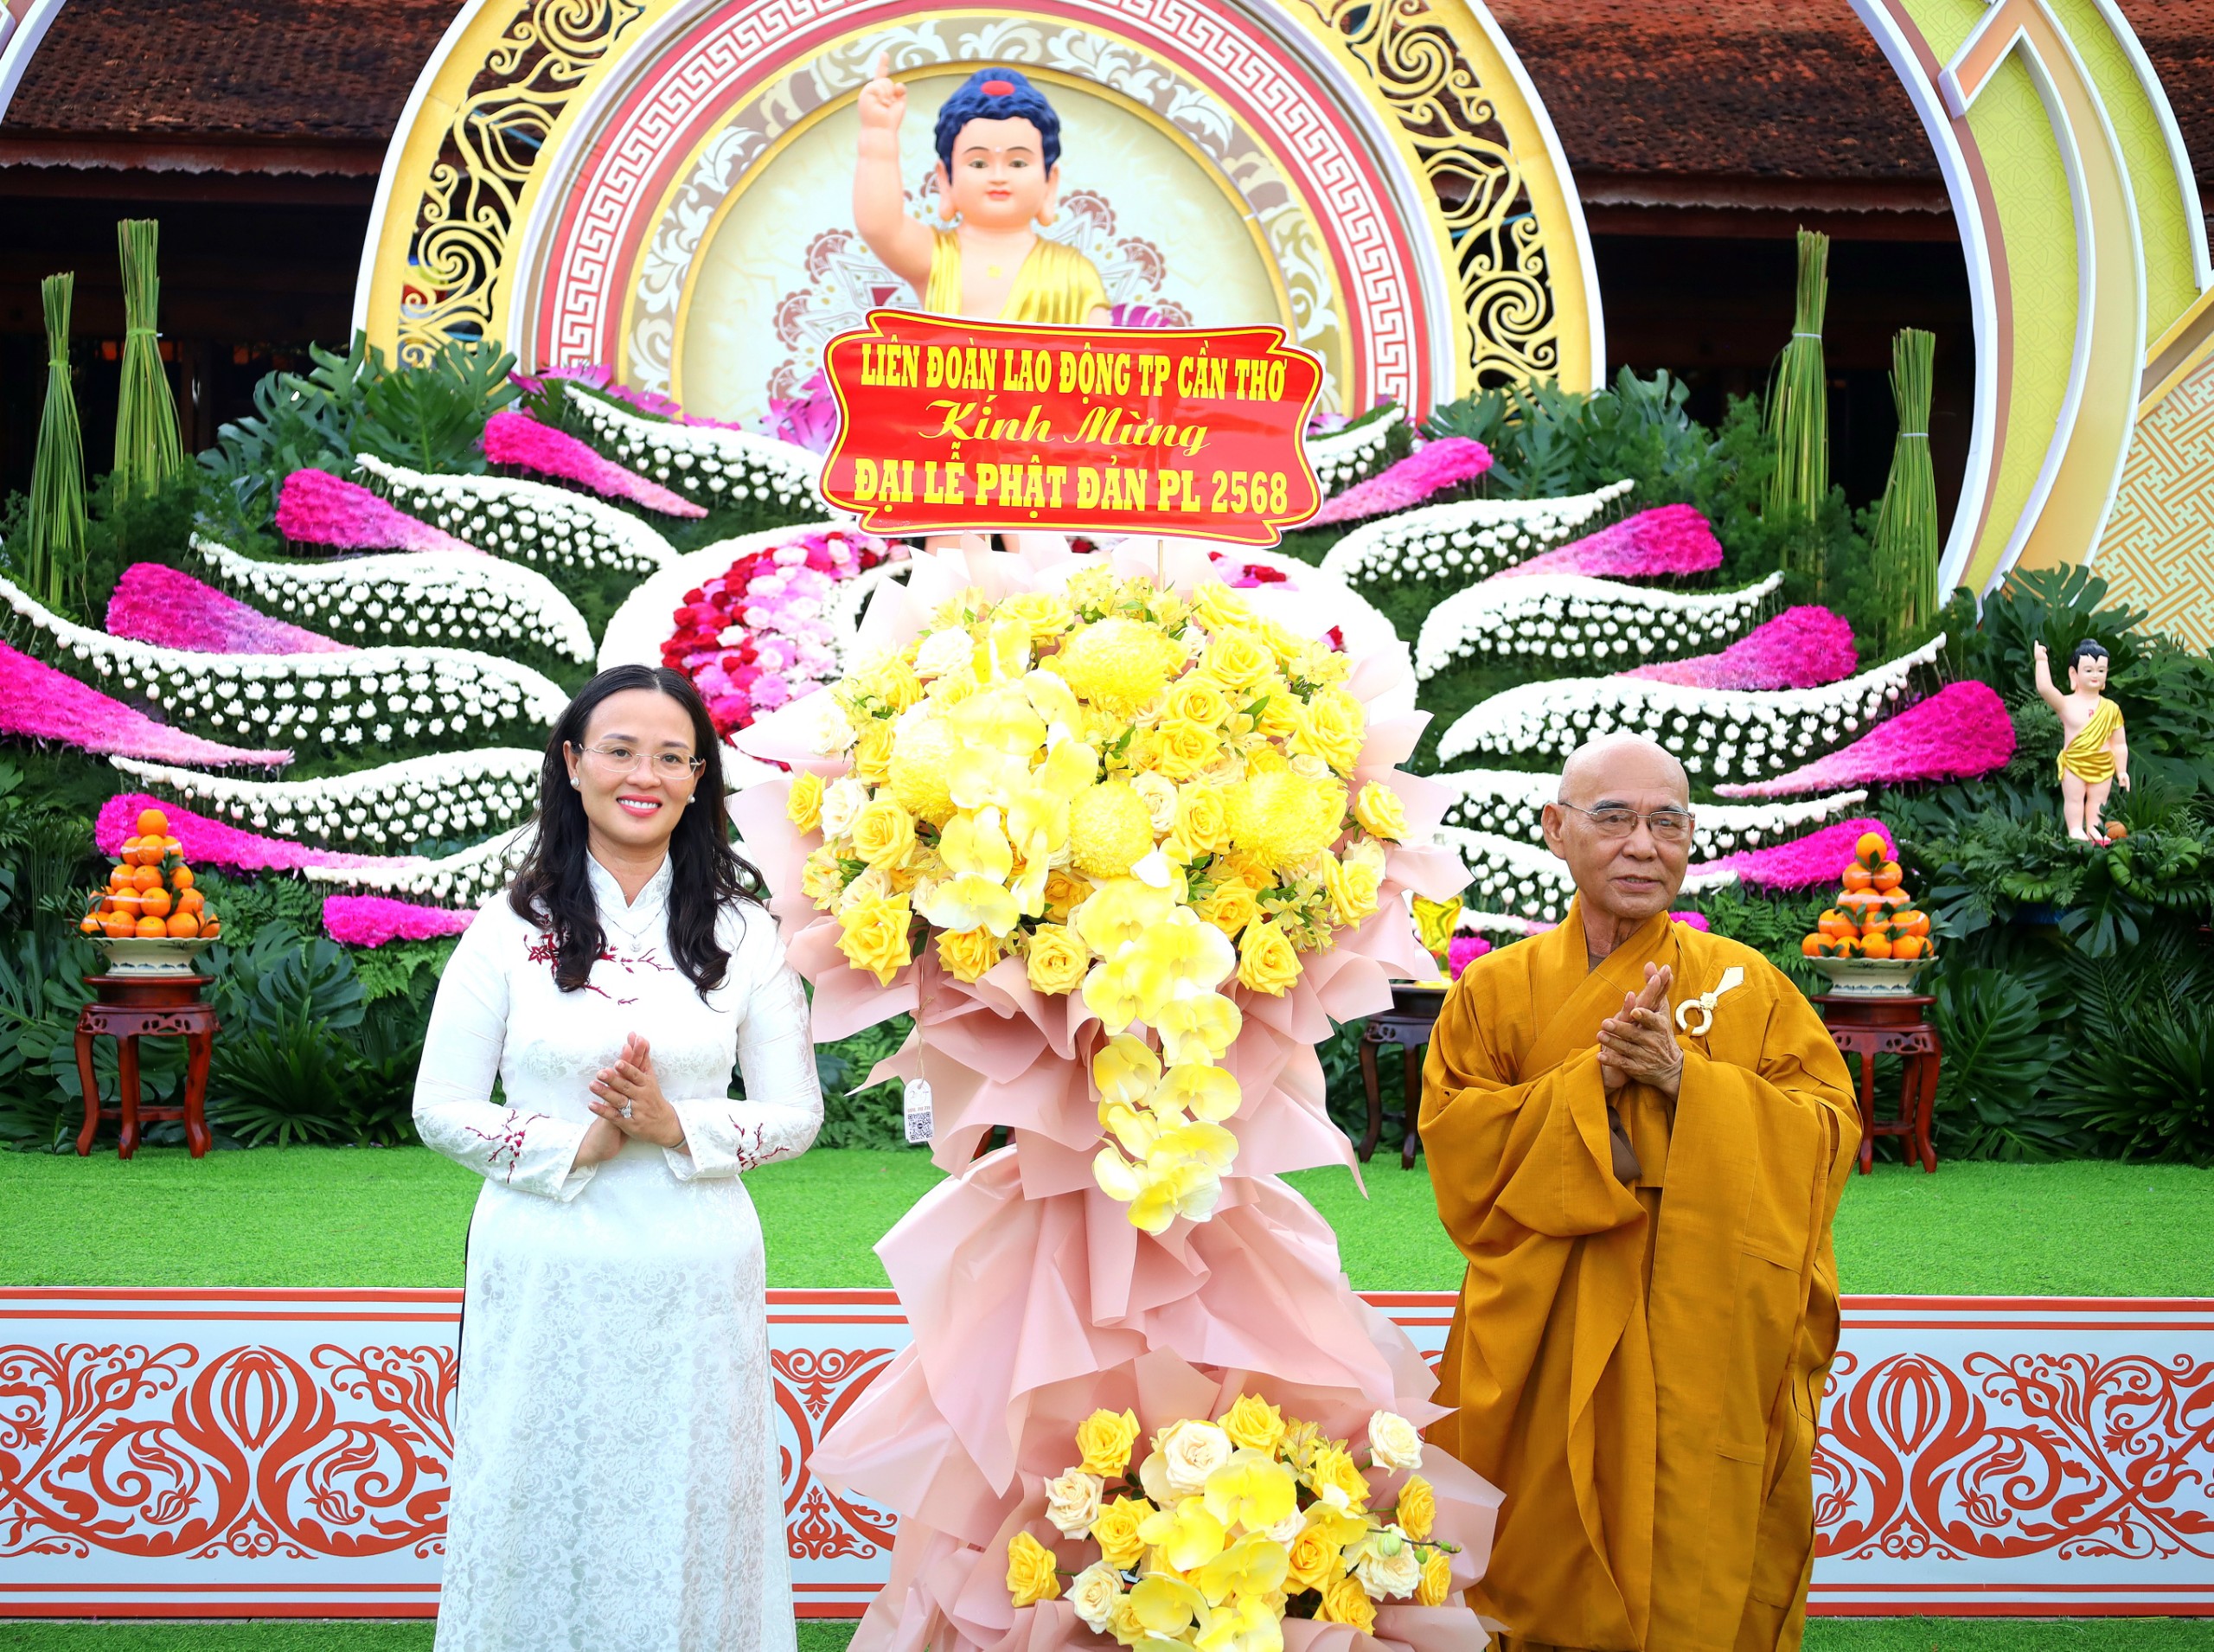 Bà Lê Thị Sương Mai - Chủ tịch Liên đoàn lao động TP. Cần Thơ trao tặng hoa chúc mừng Đại lễ Phật Đản Phật lịch 2568.